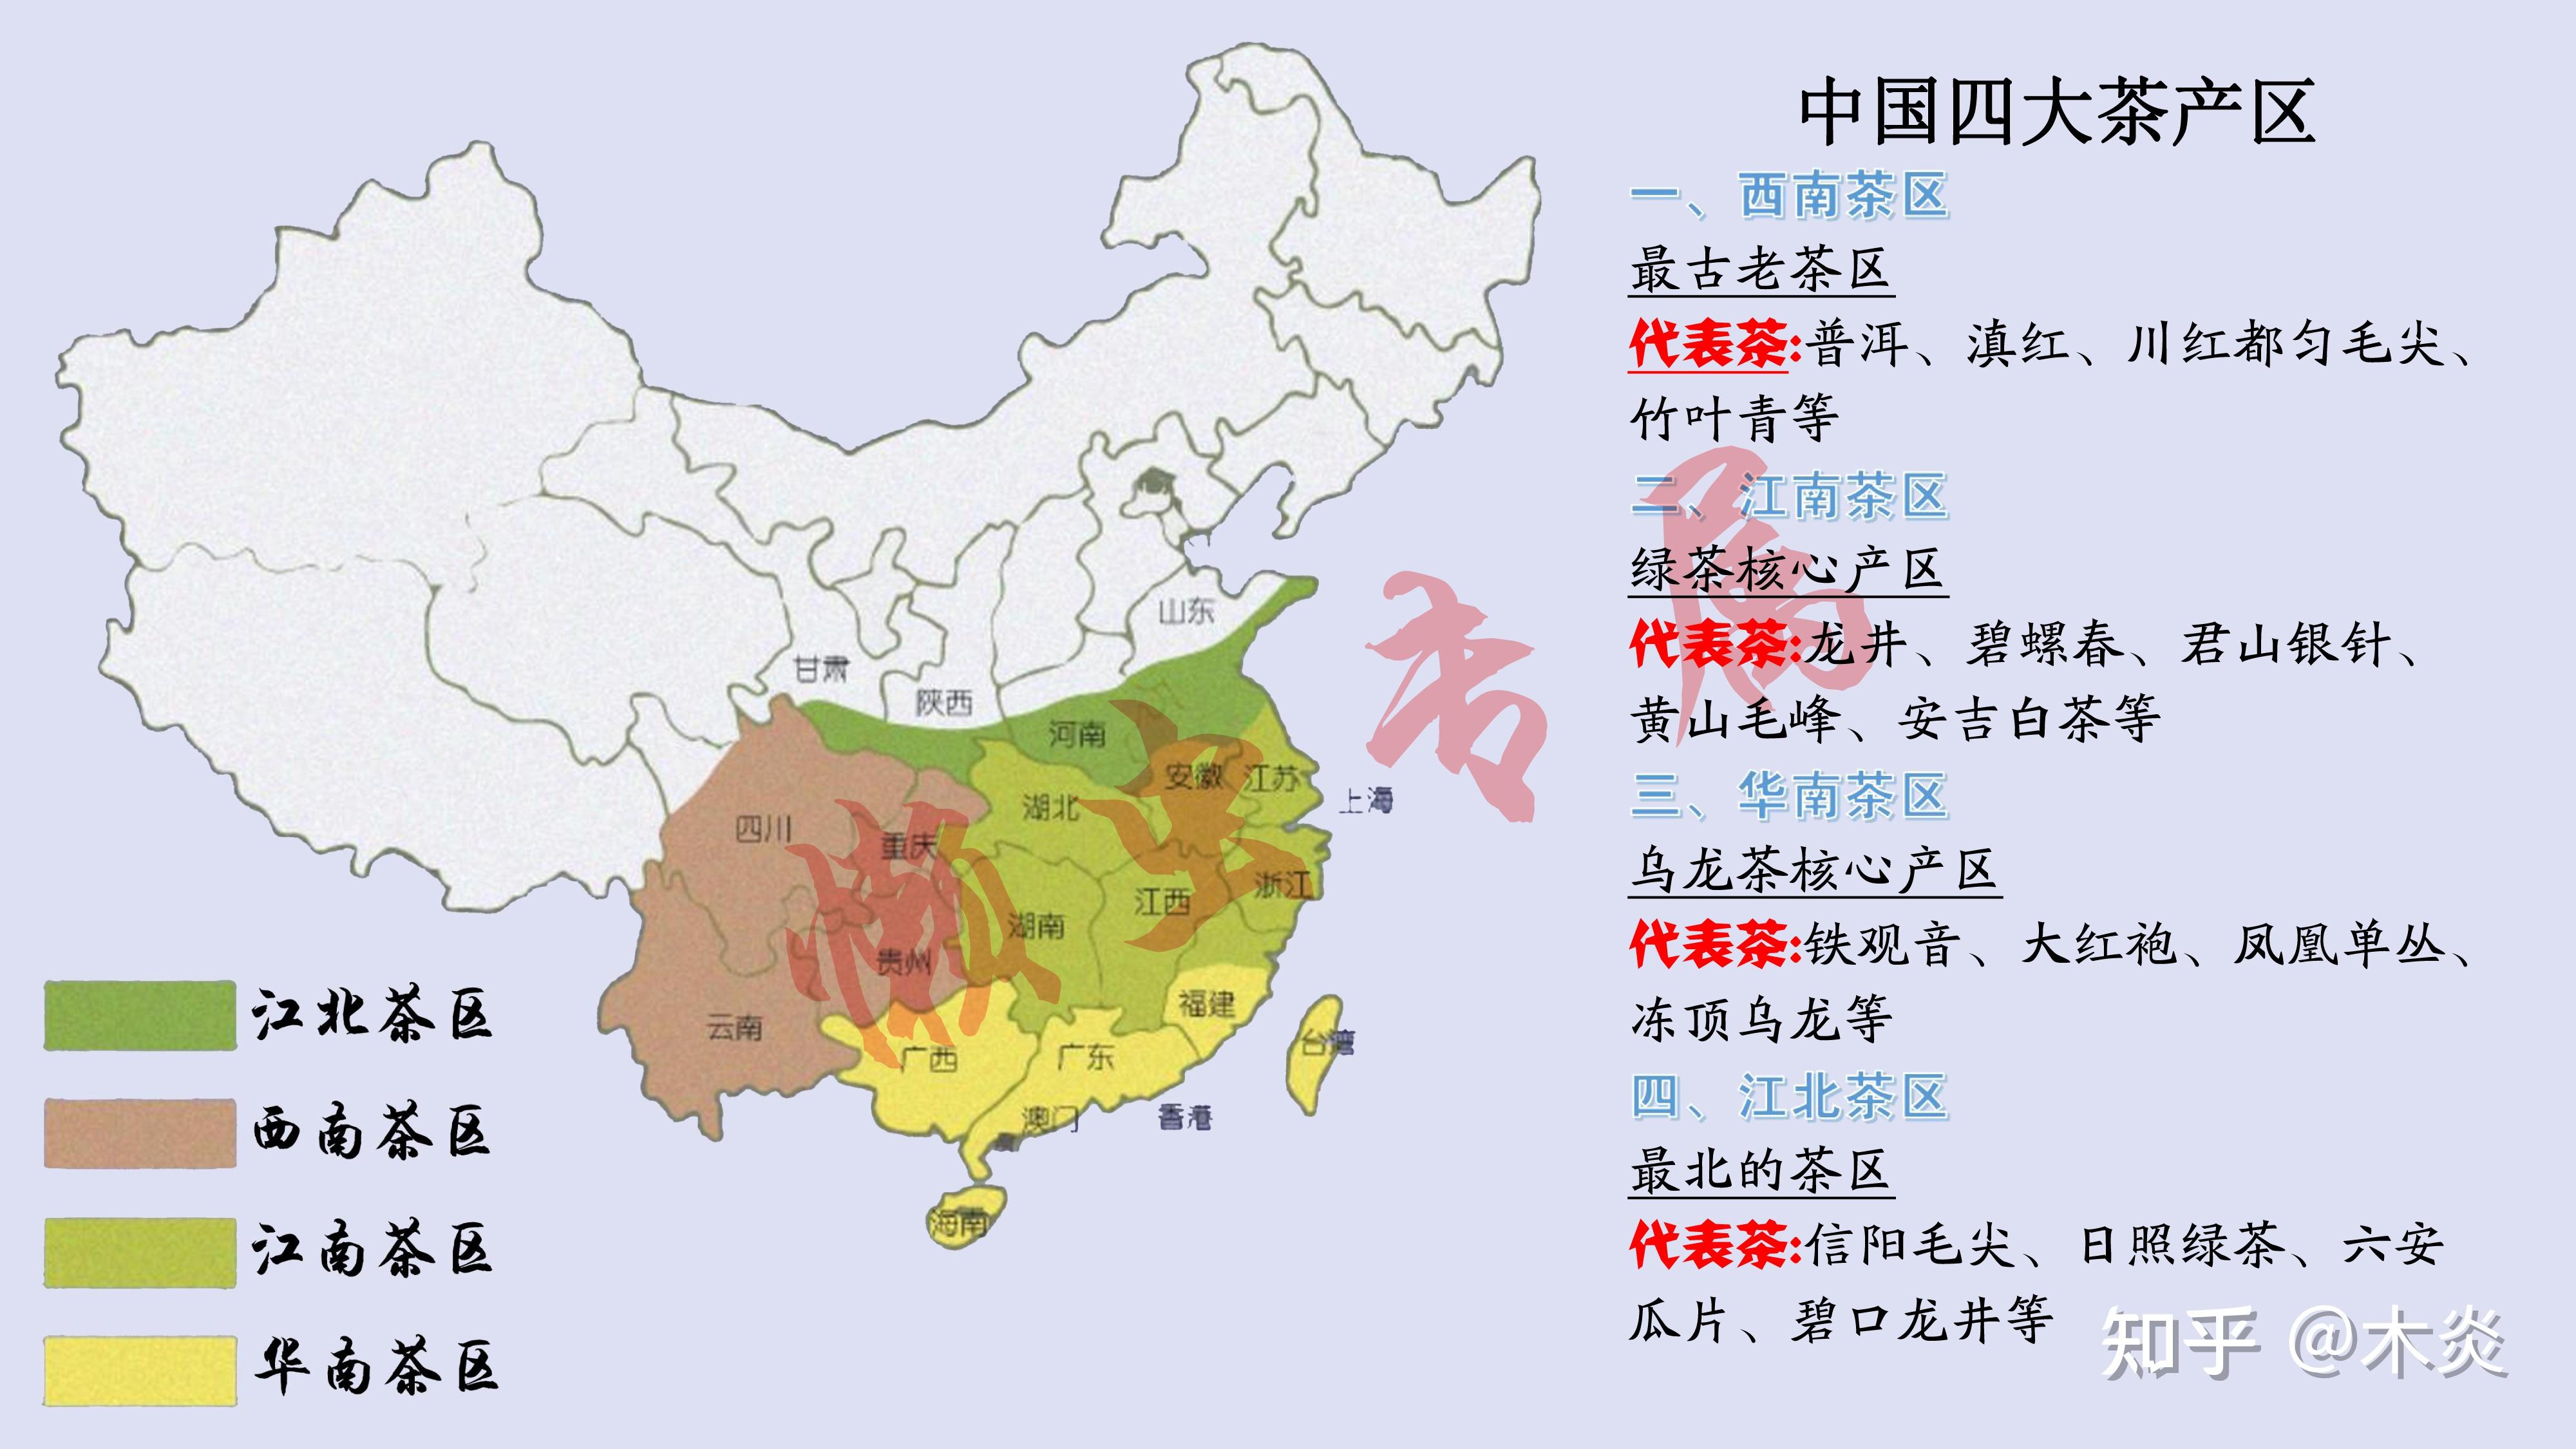 中国红茶产区分布图图片